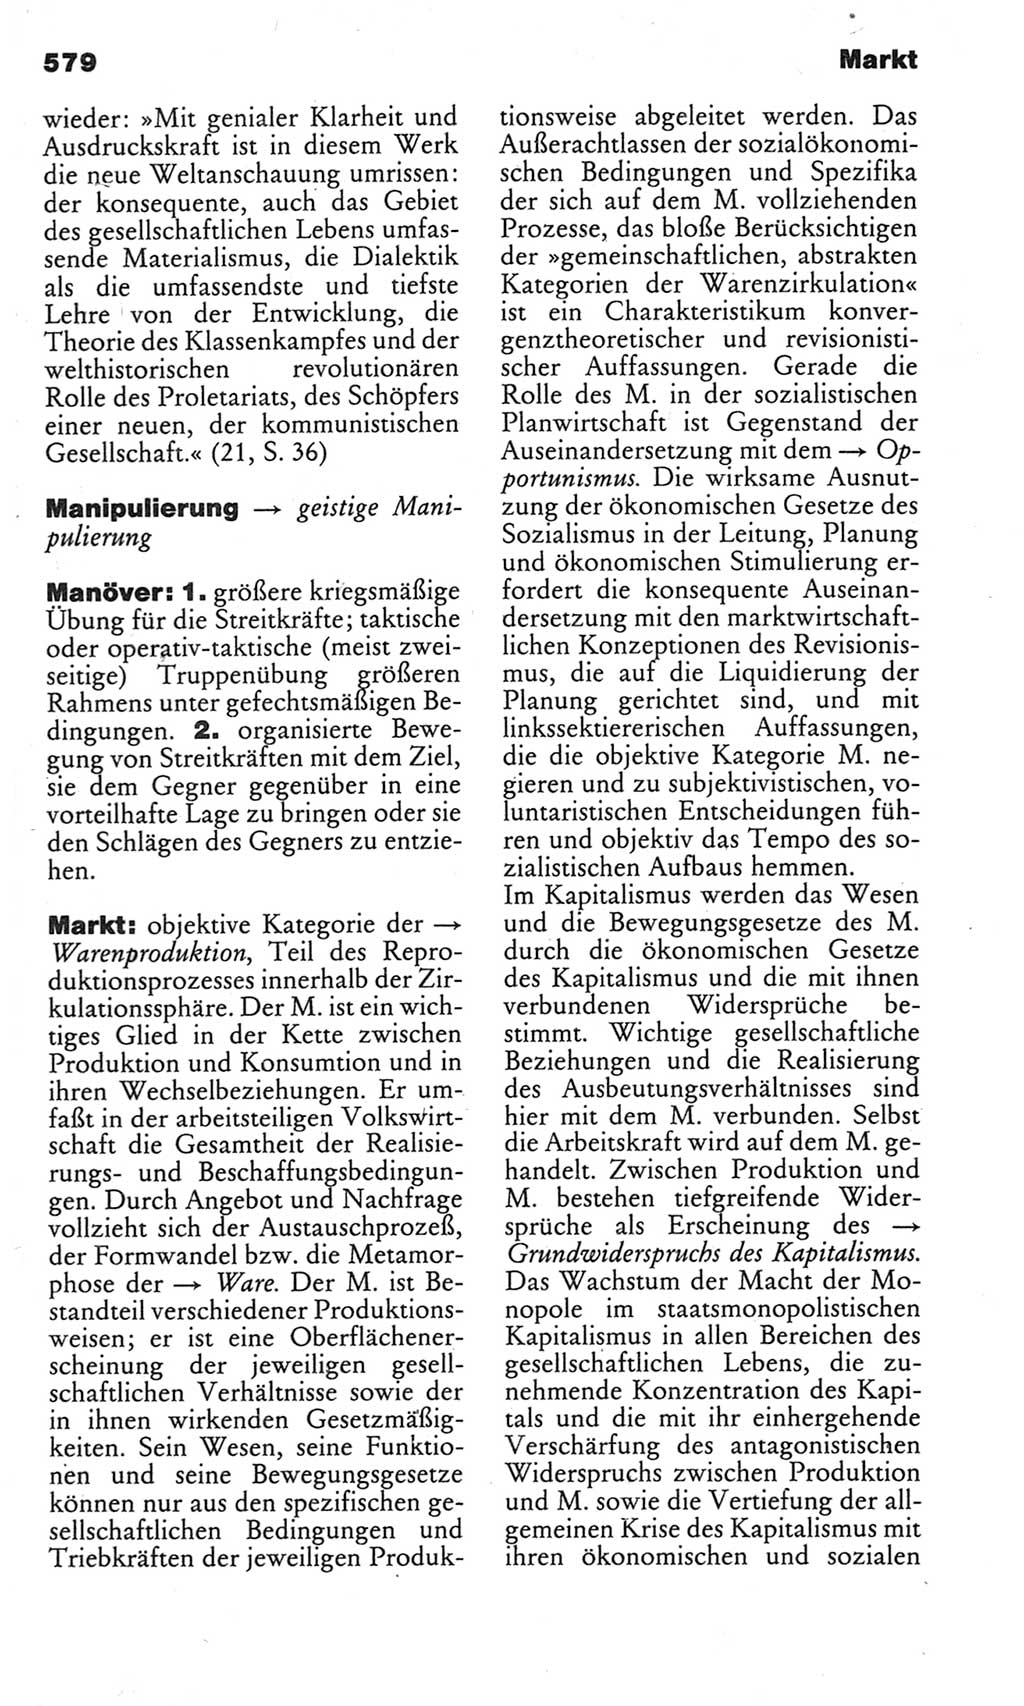 Kleines politisches Wörterbuch [Deutsche Demokratische Republik (DDR)] 1983, Seite 579 (Kl. pol. Wb. DDR 1983, S. 579)